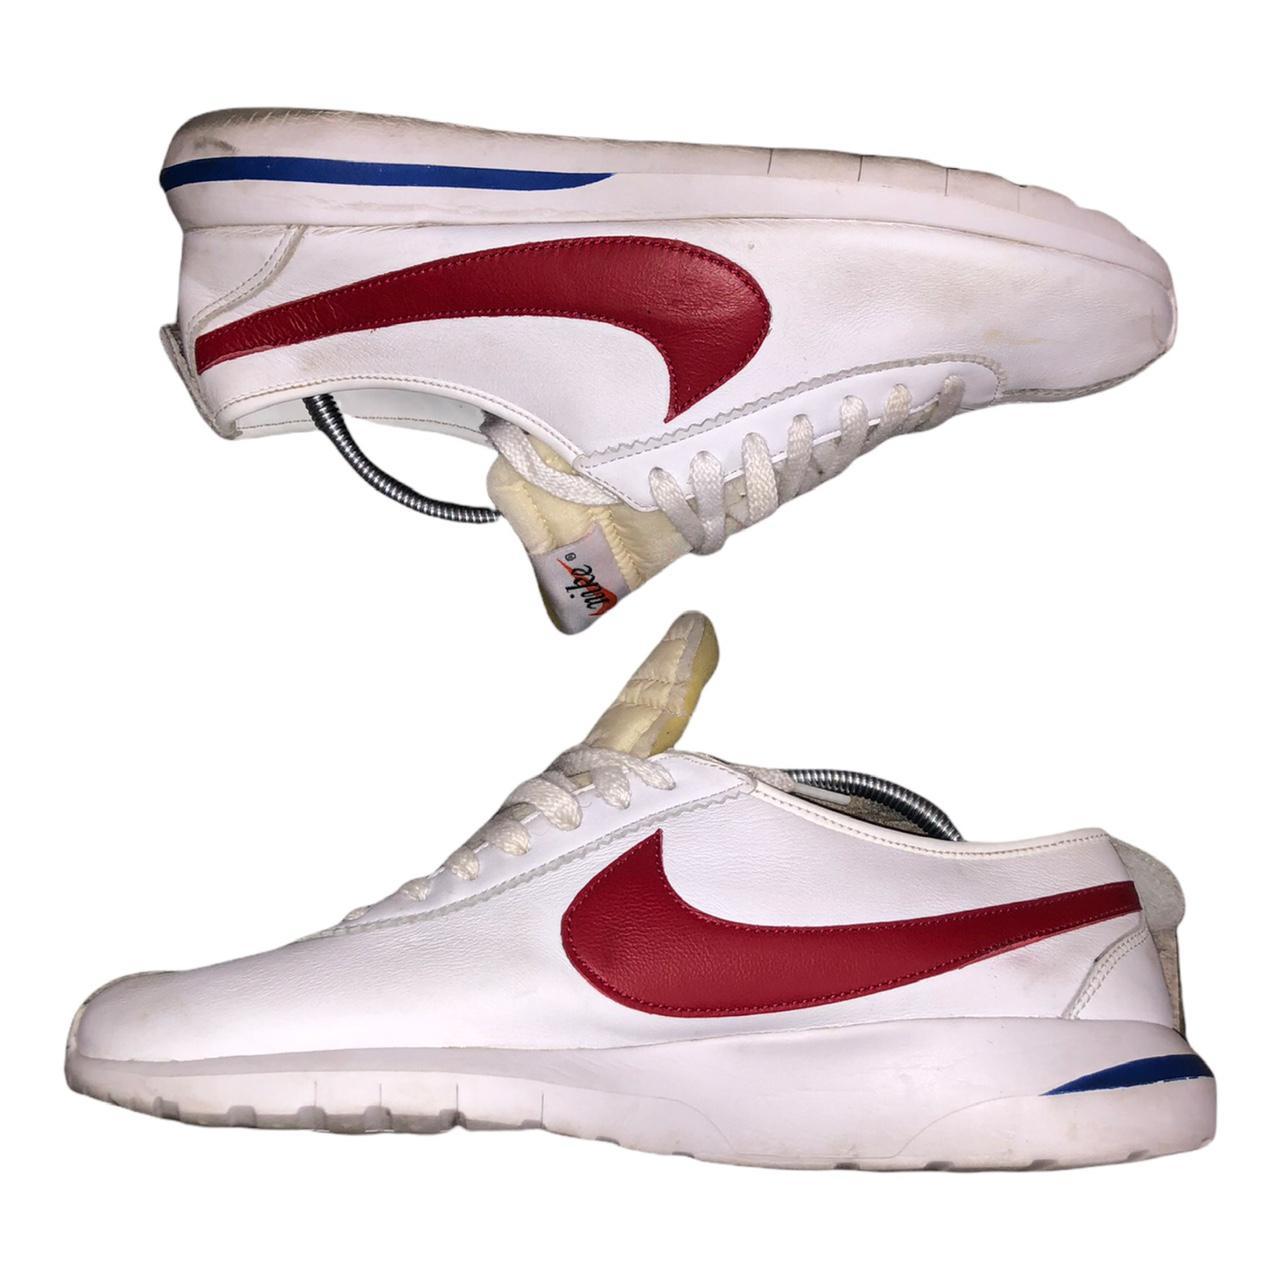 Product Image 3 - Nike Mens Roshe Cortez NM